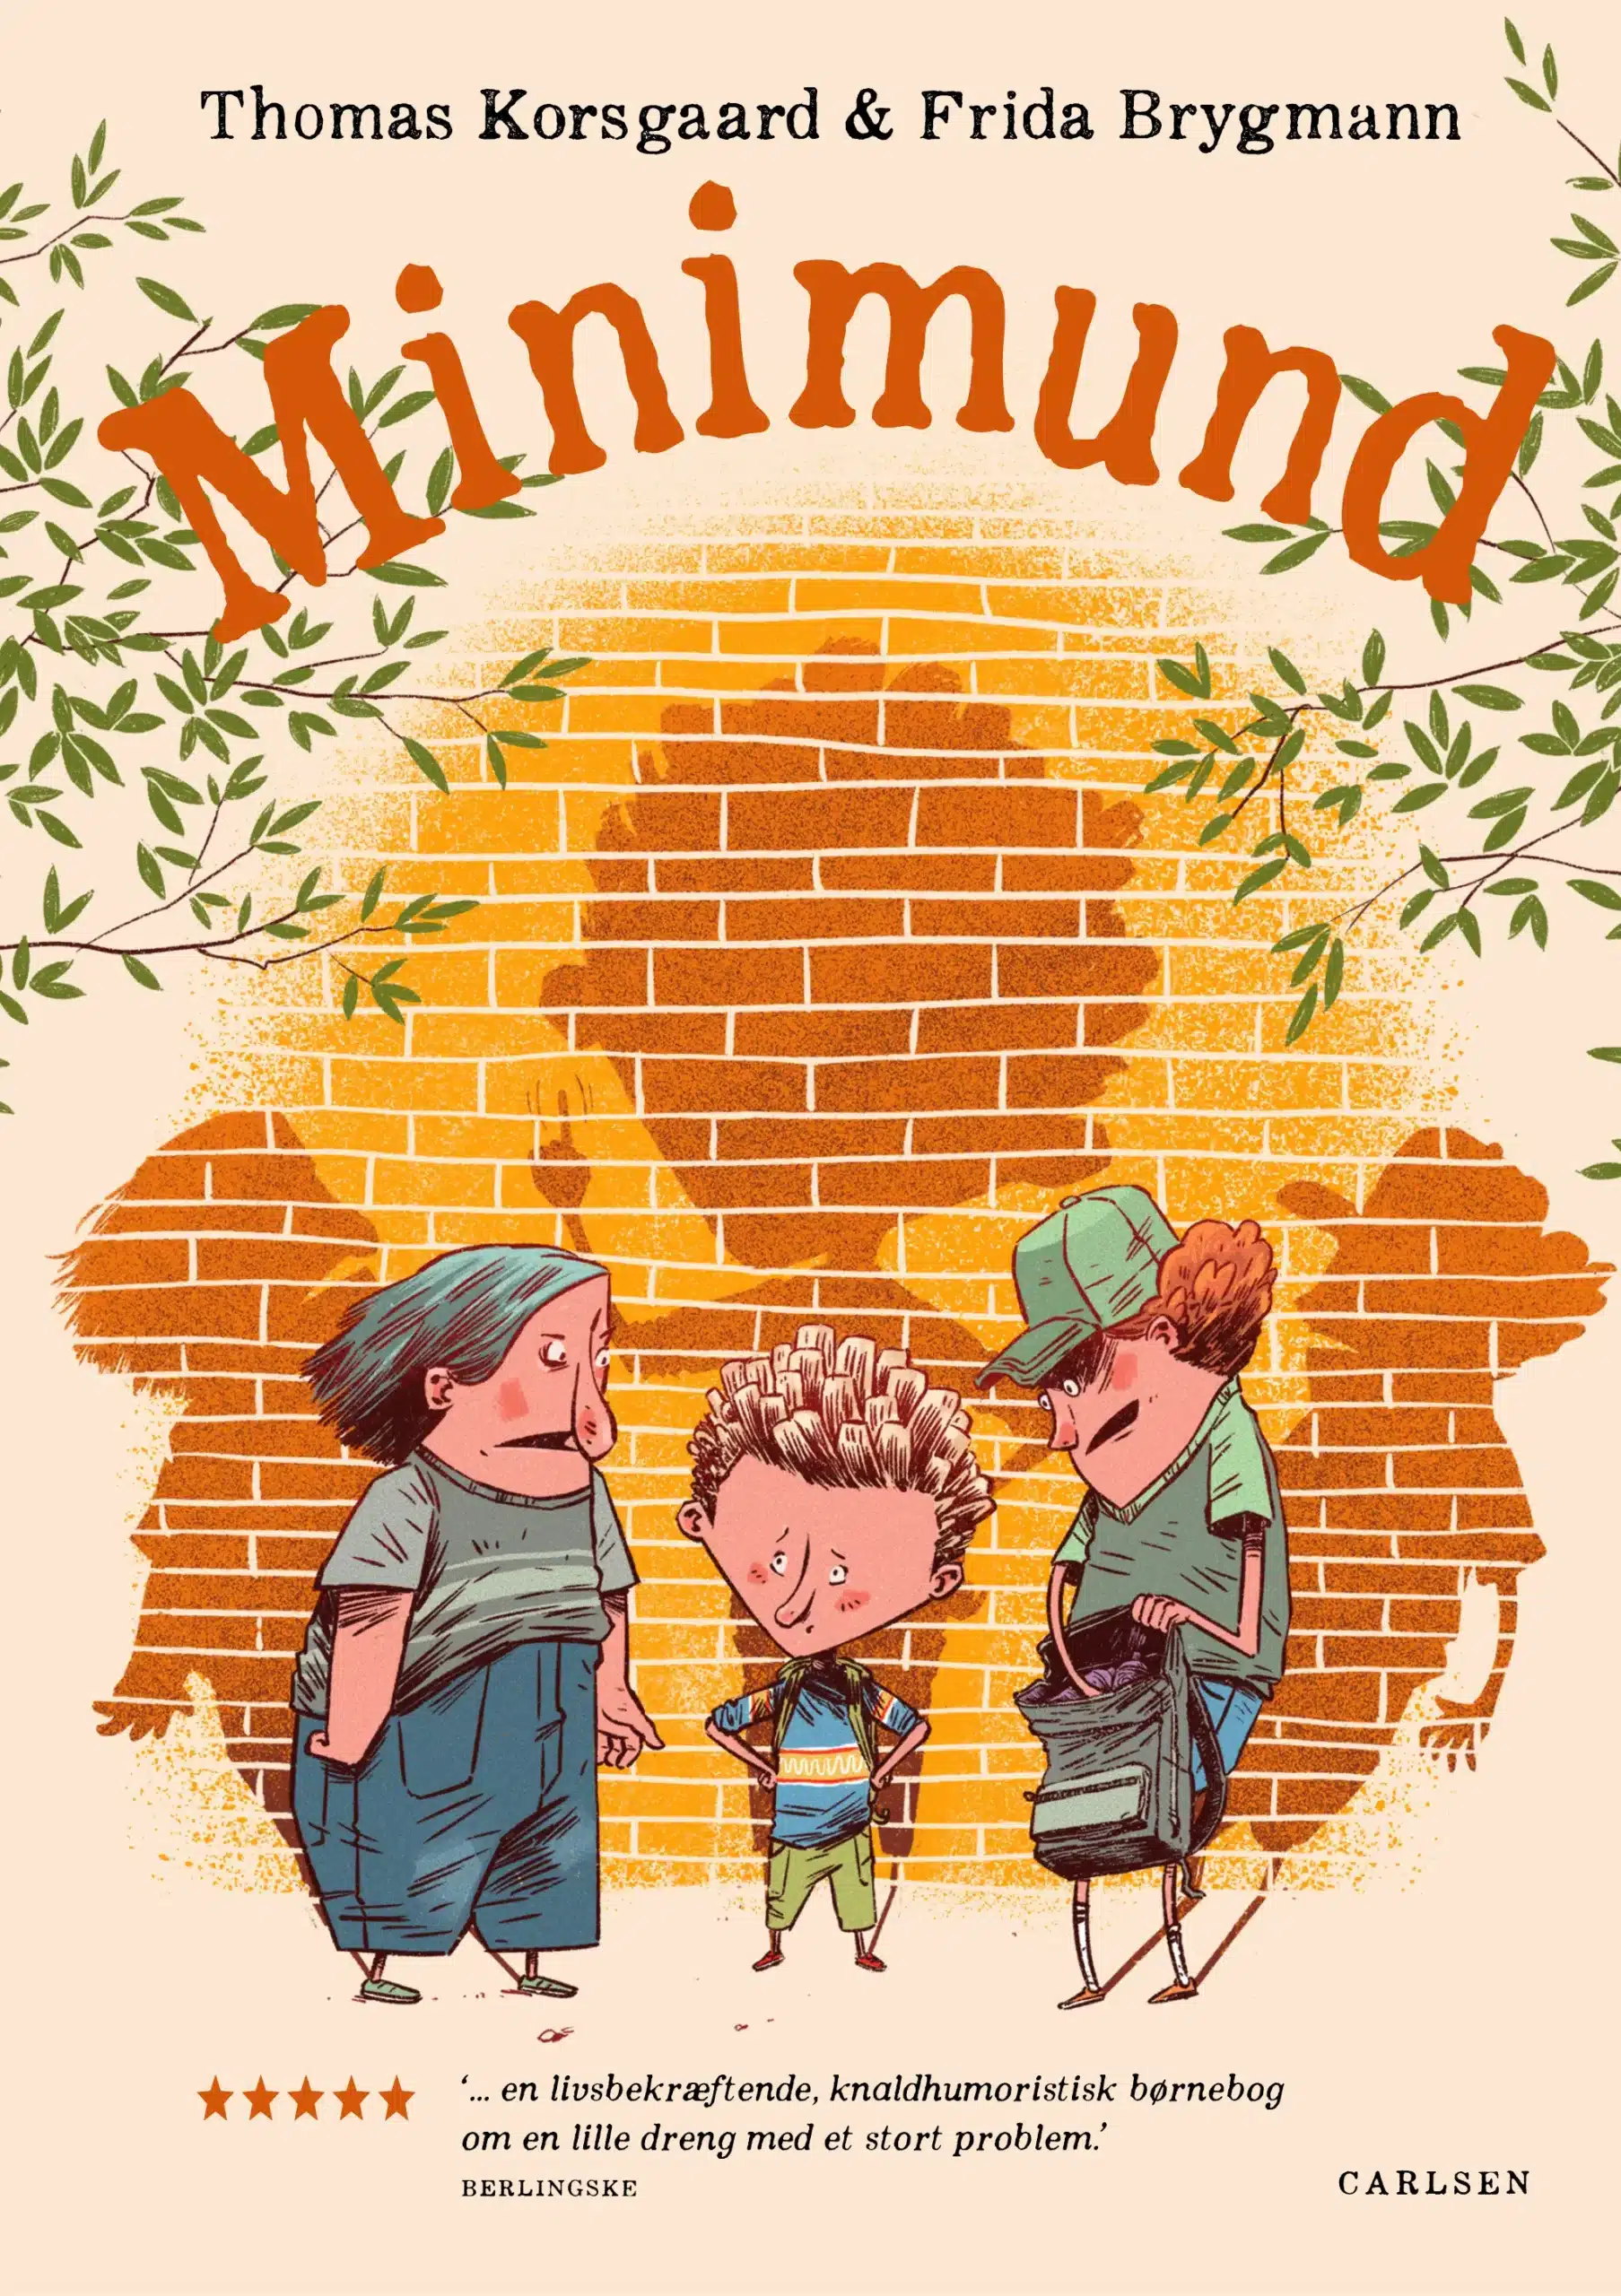 Børnebogen Minimund af Frida Brygmann og Thomas Korsgaard. Hvis nogen læser det her, så hjælp mig dog!